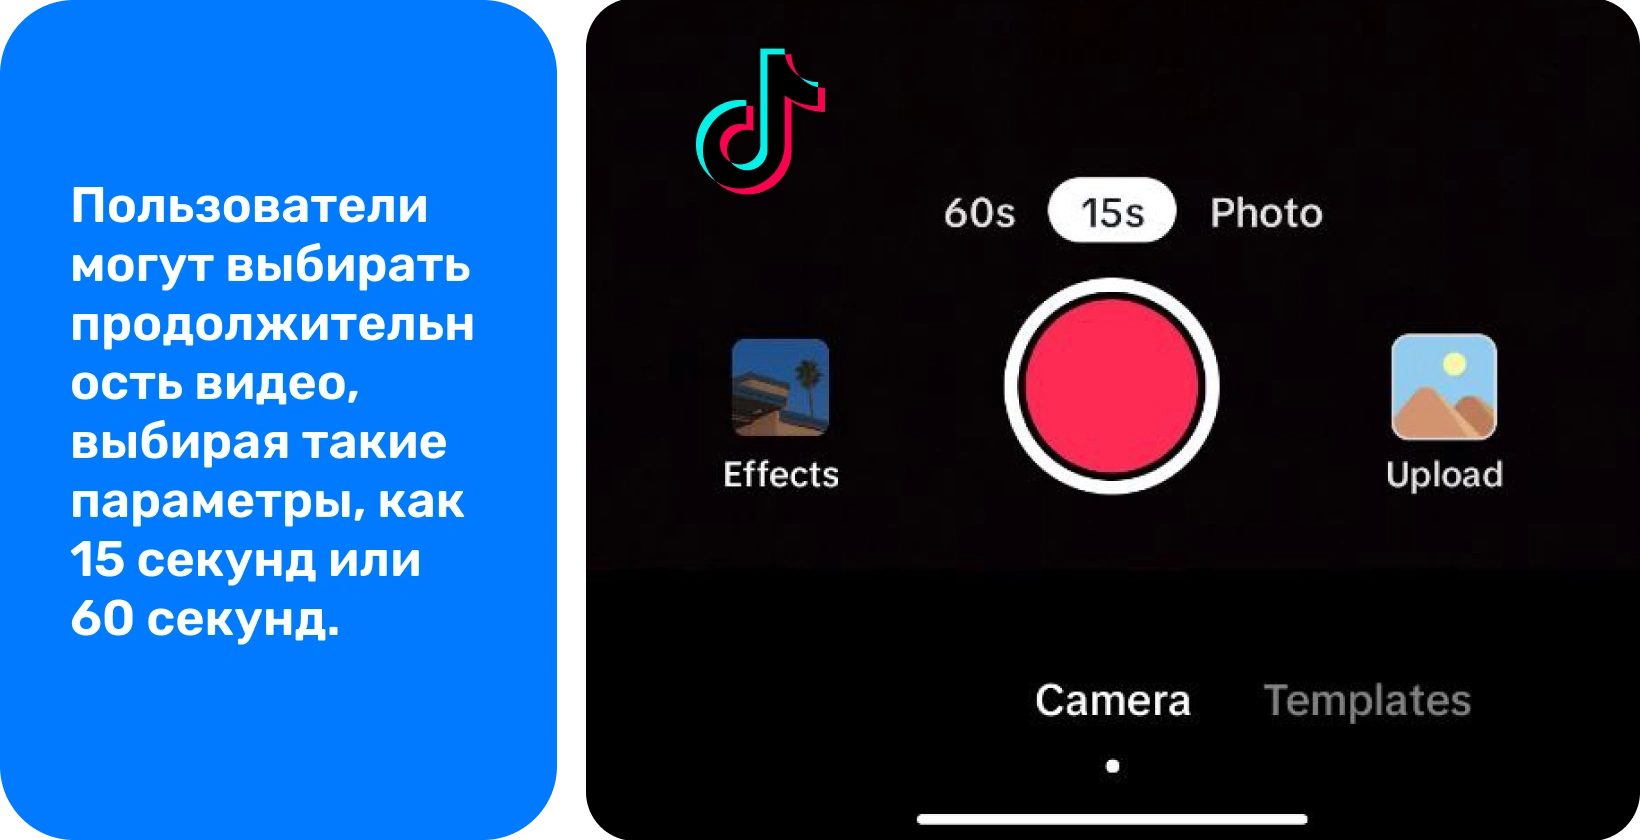 Интерфейс записи TikTok с опциями добавления звука, переворачивания камеры, применения фильтров, использования таймера и многого другого для создания креативных видео.
